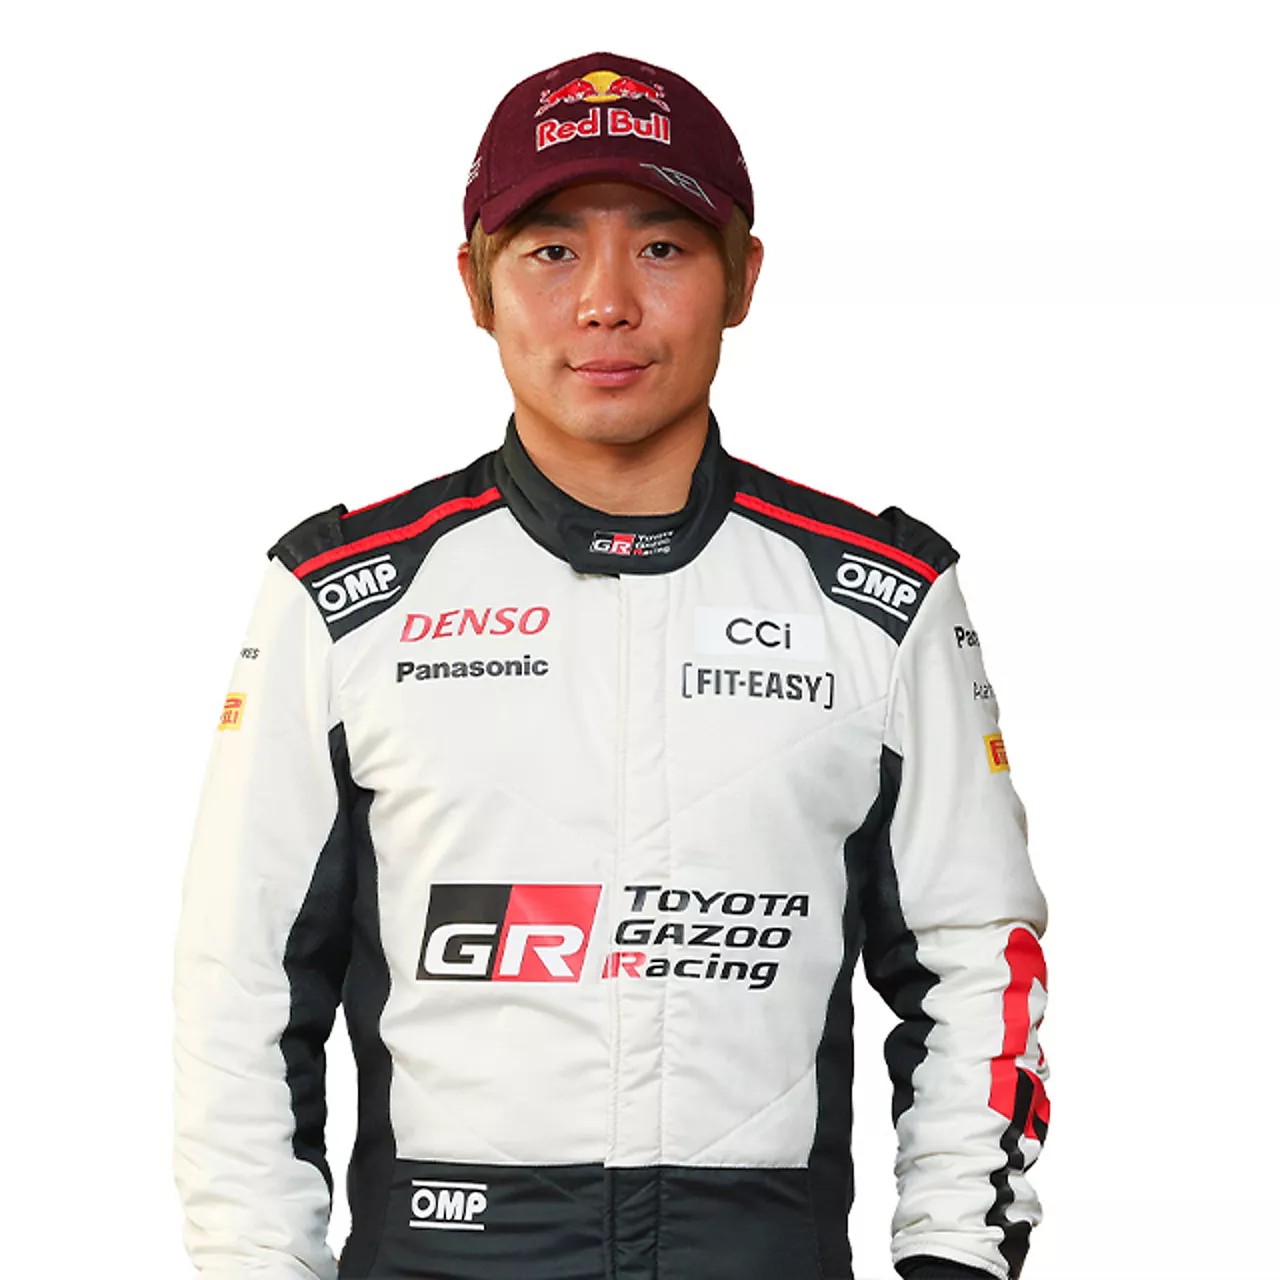 Portrait of driver, Takamoto Katsuta